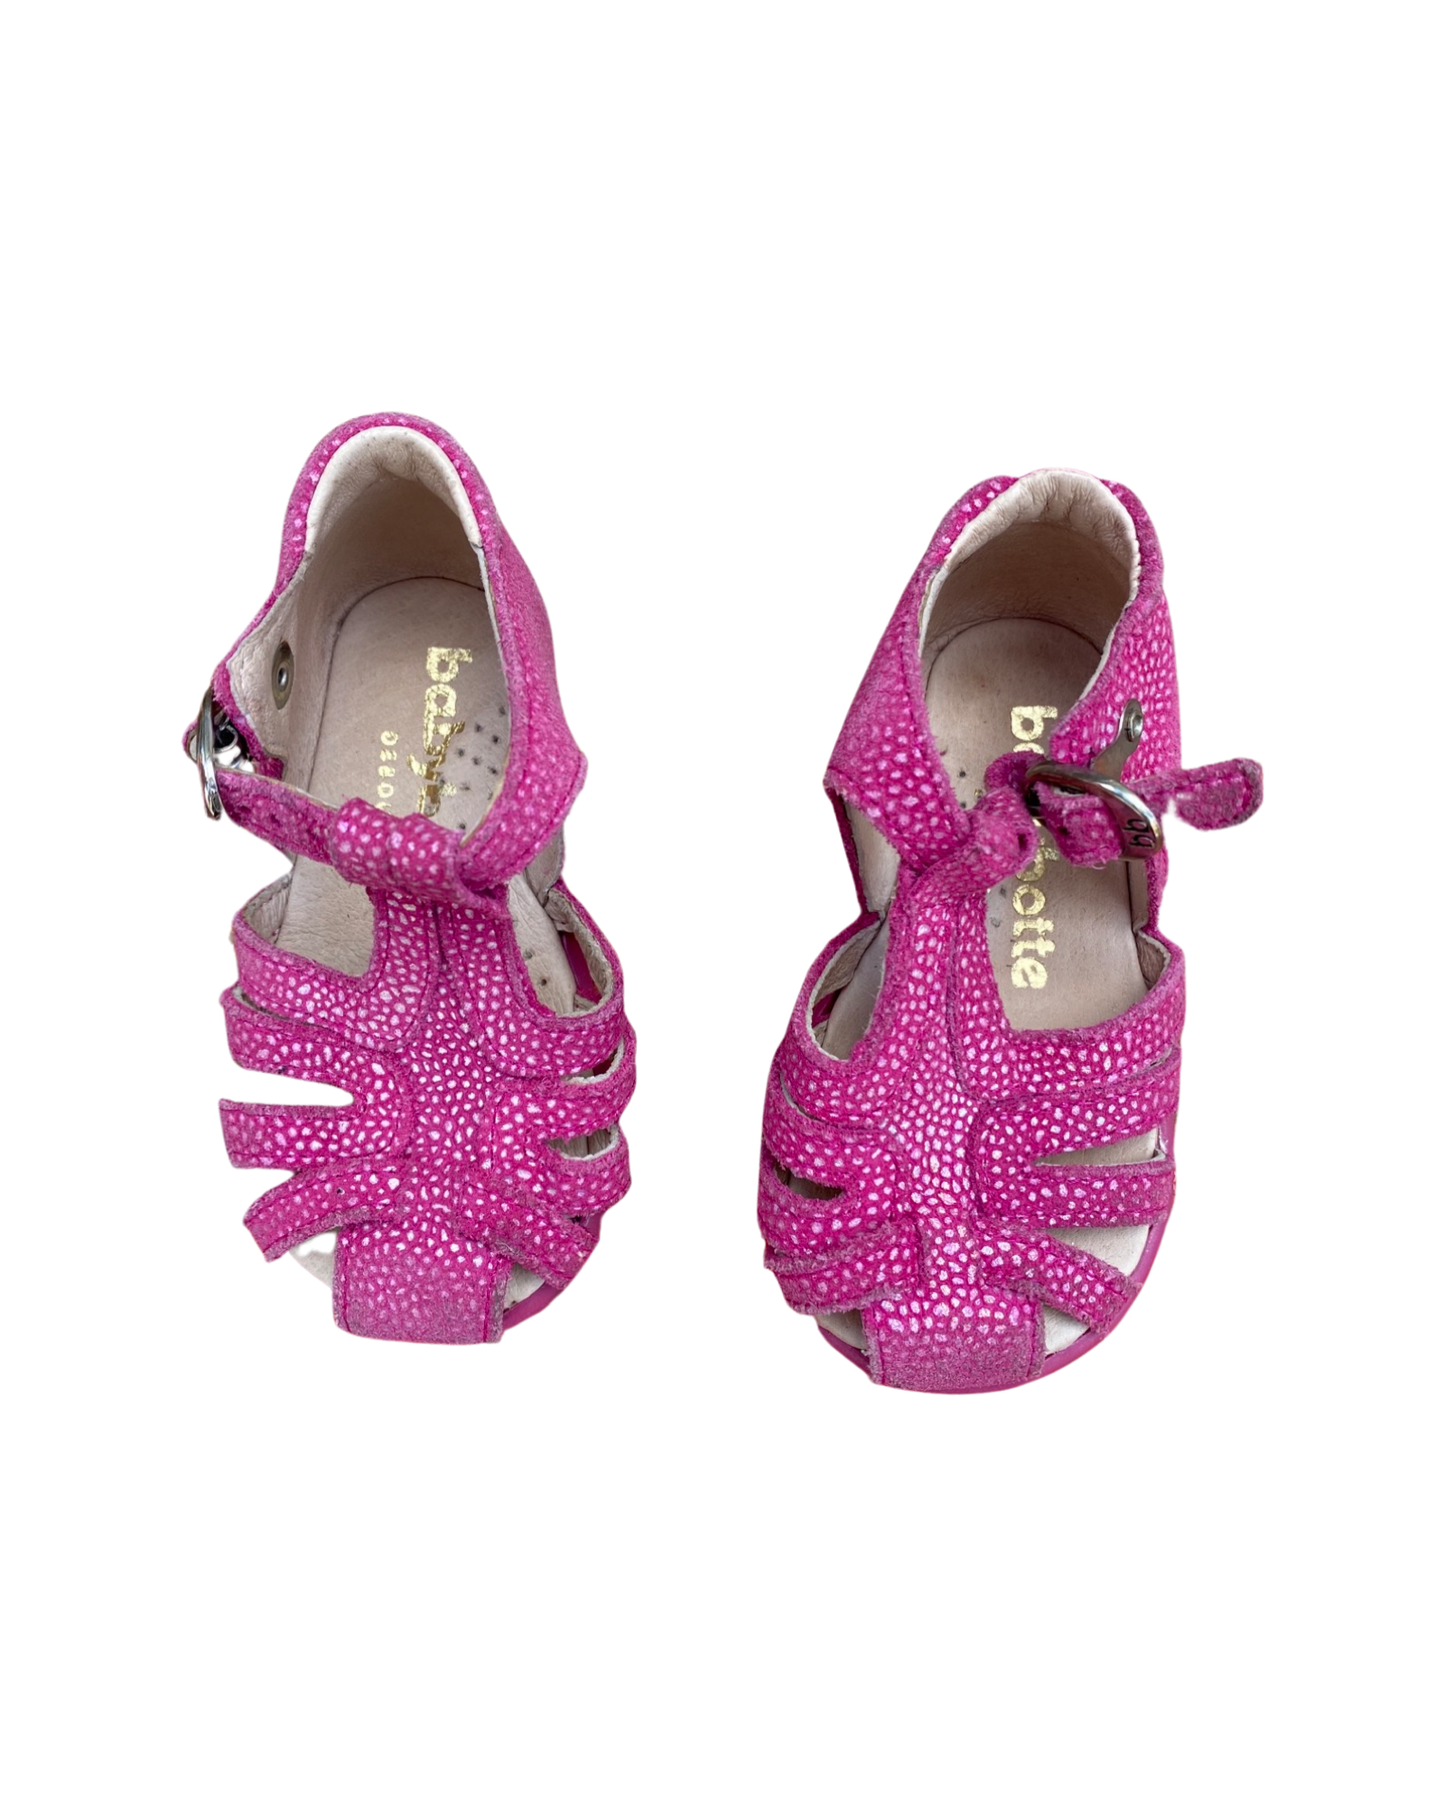 Babybotte pink cage sandals (size EU19/UK3)